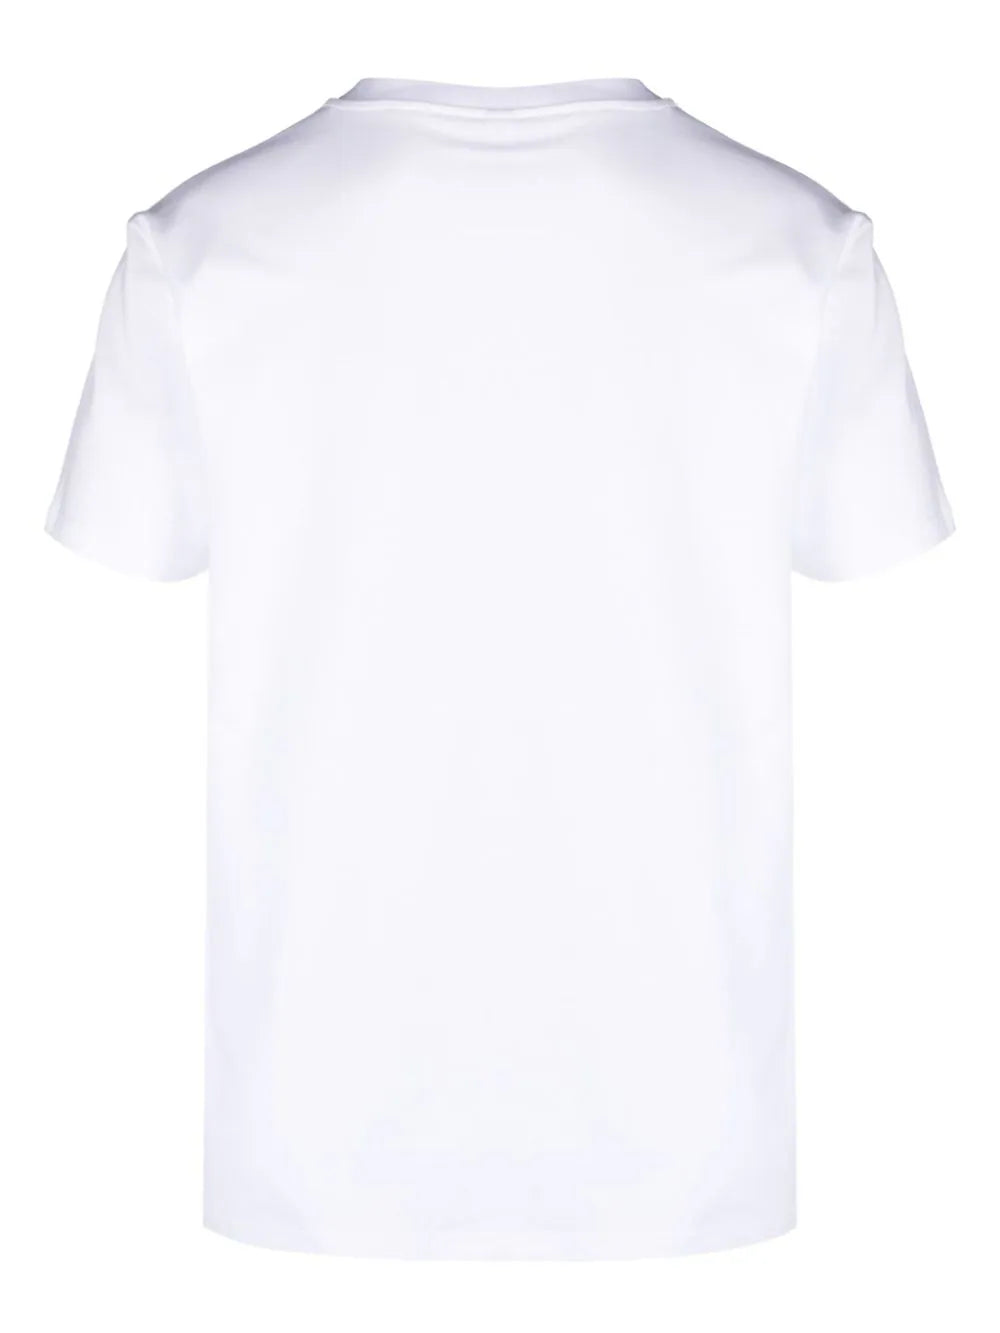 Moschino uomo t-shirt 0703 4406 A0001 Bianco